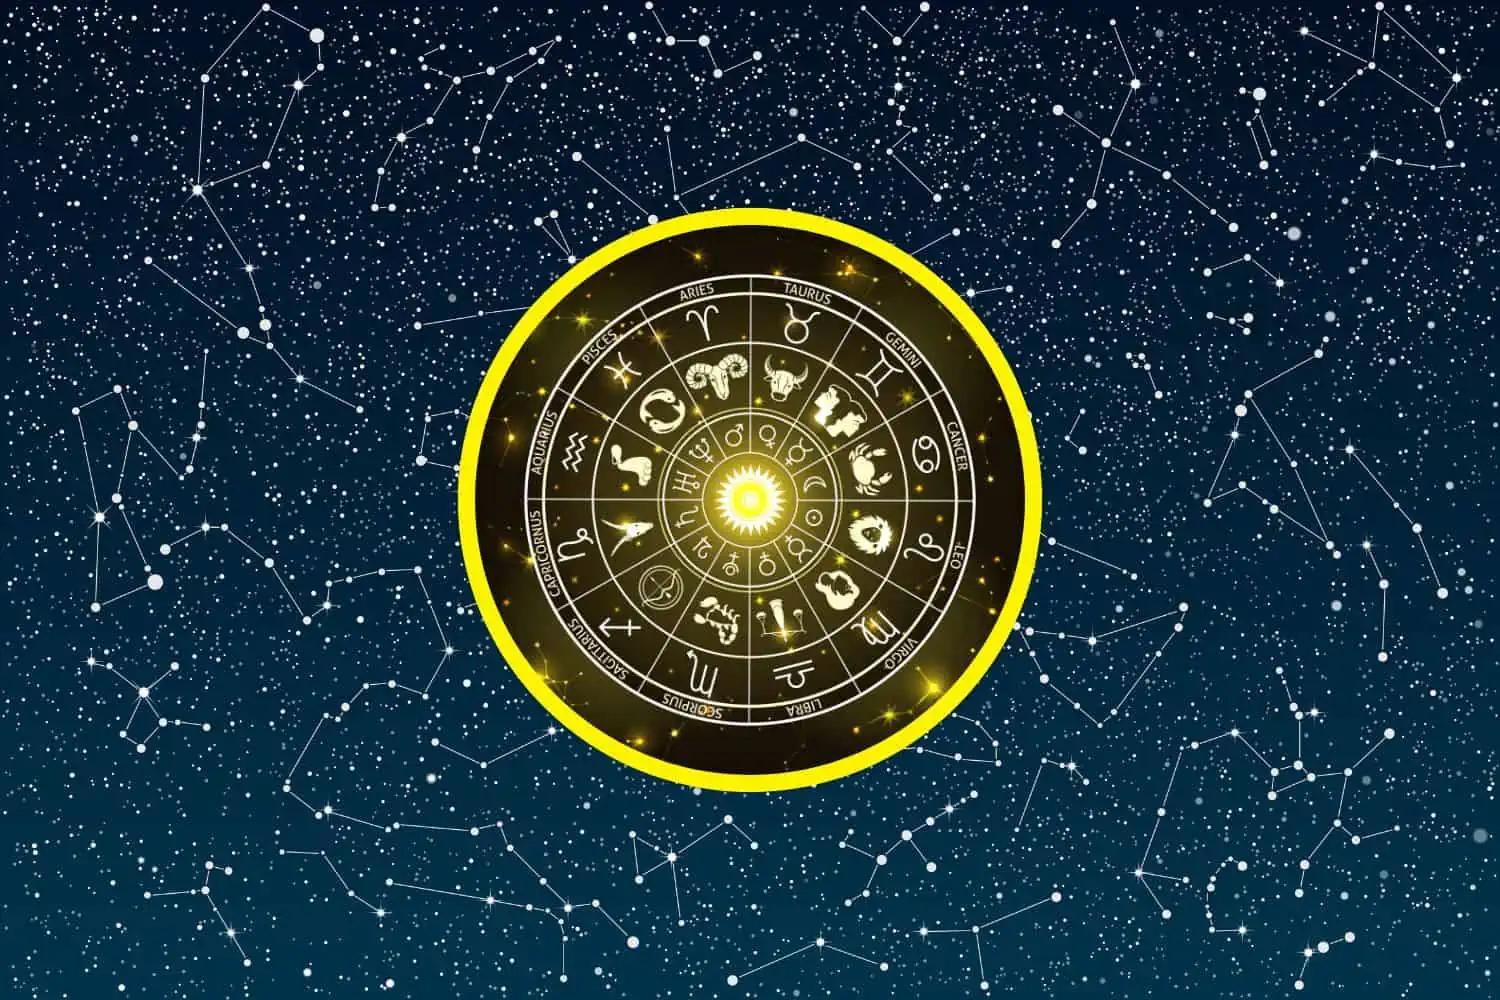 Today’s Free Horoscopes Monday 20 February 2023